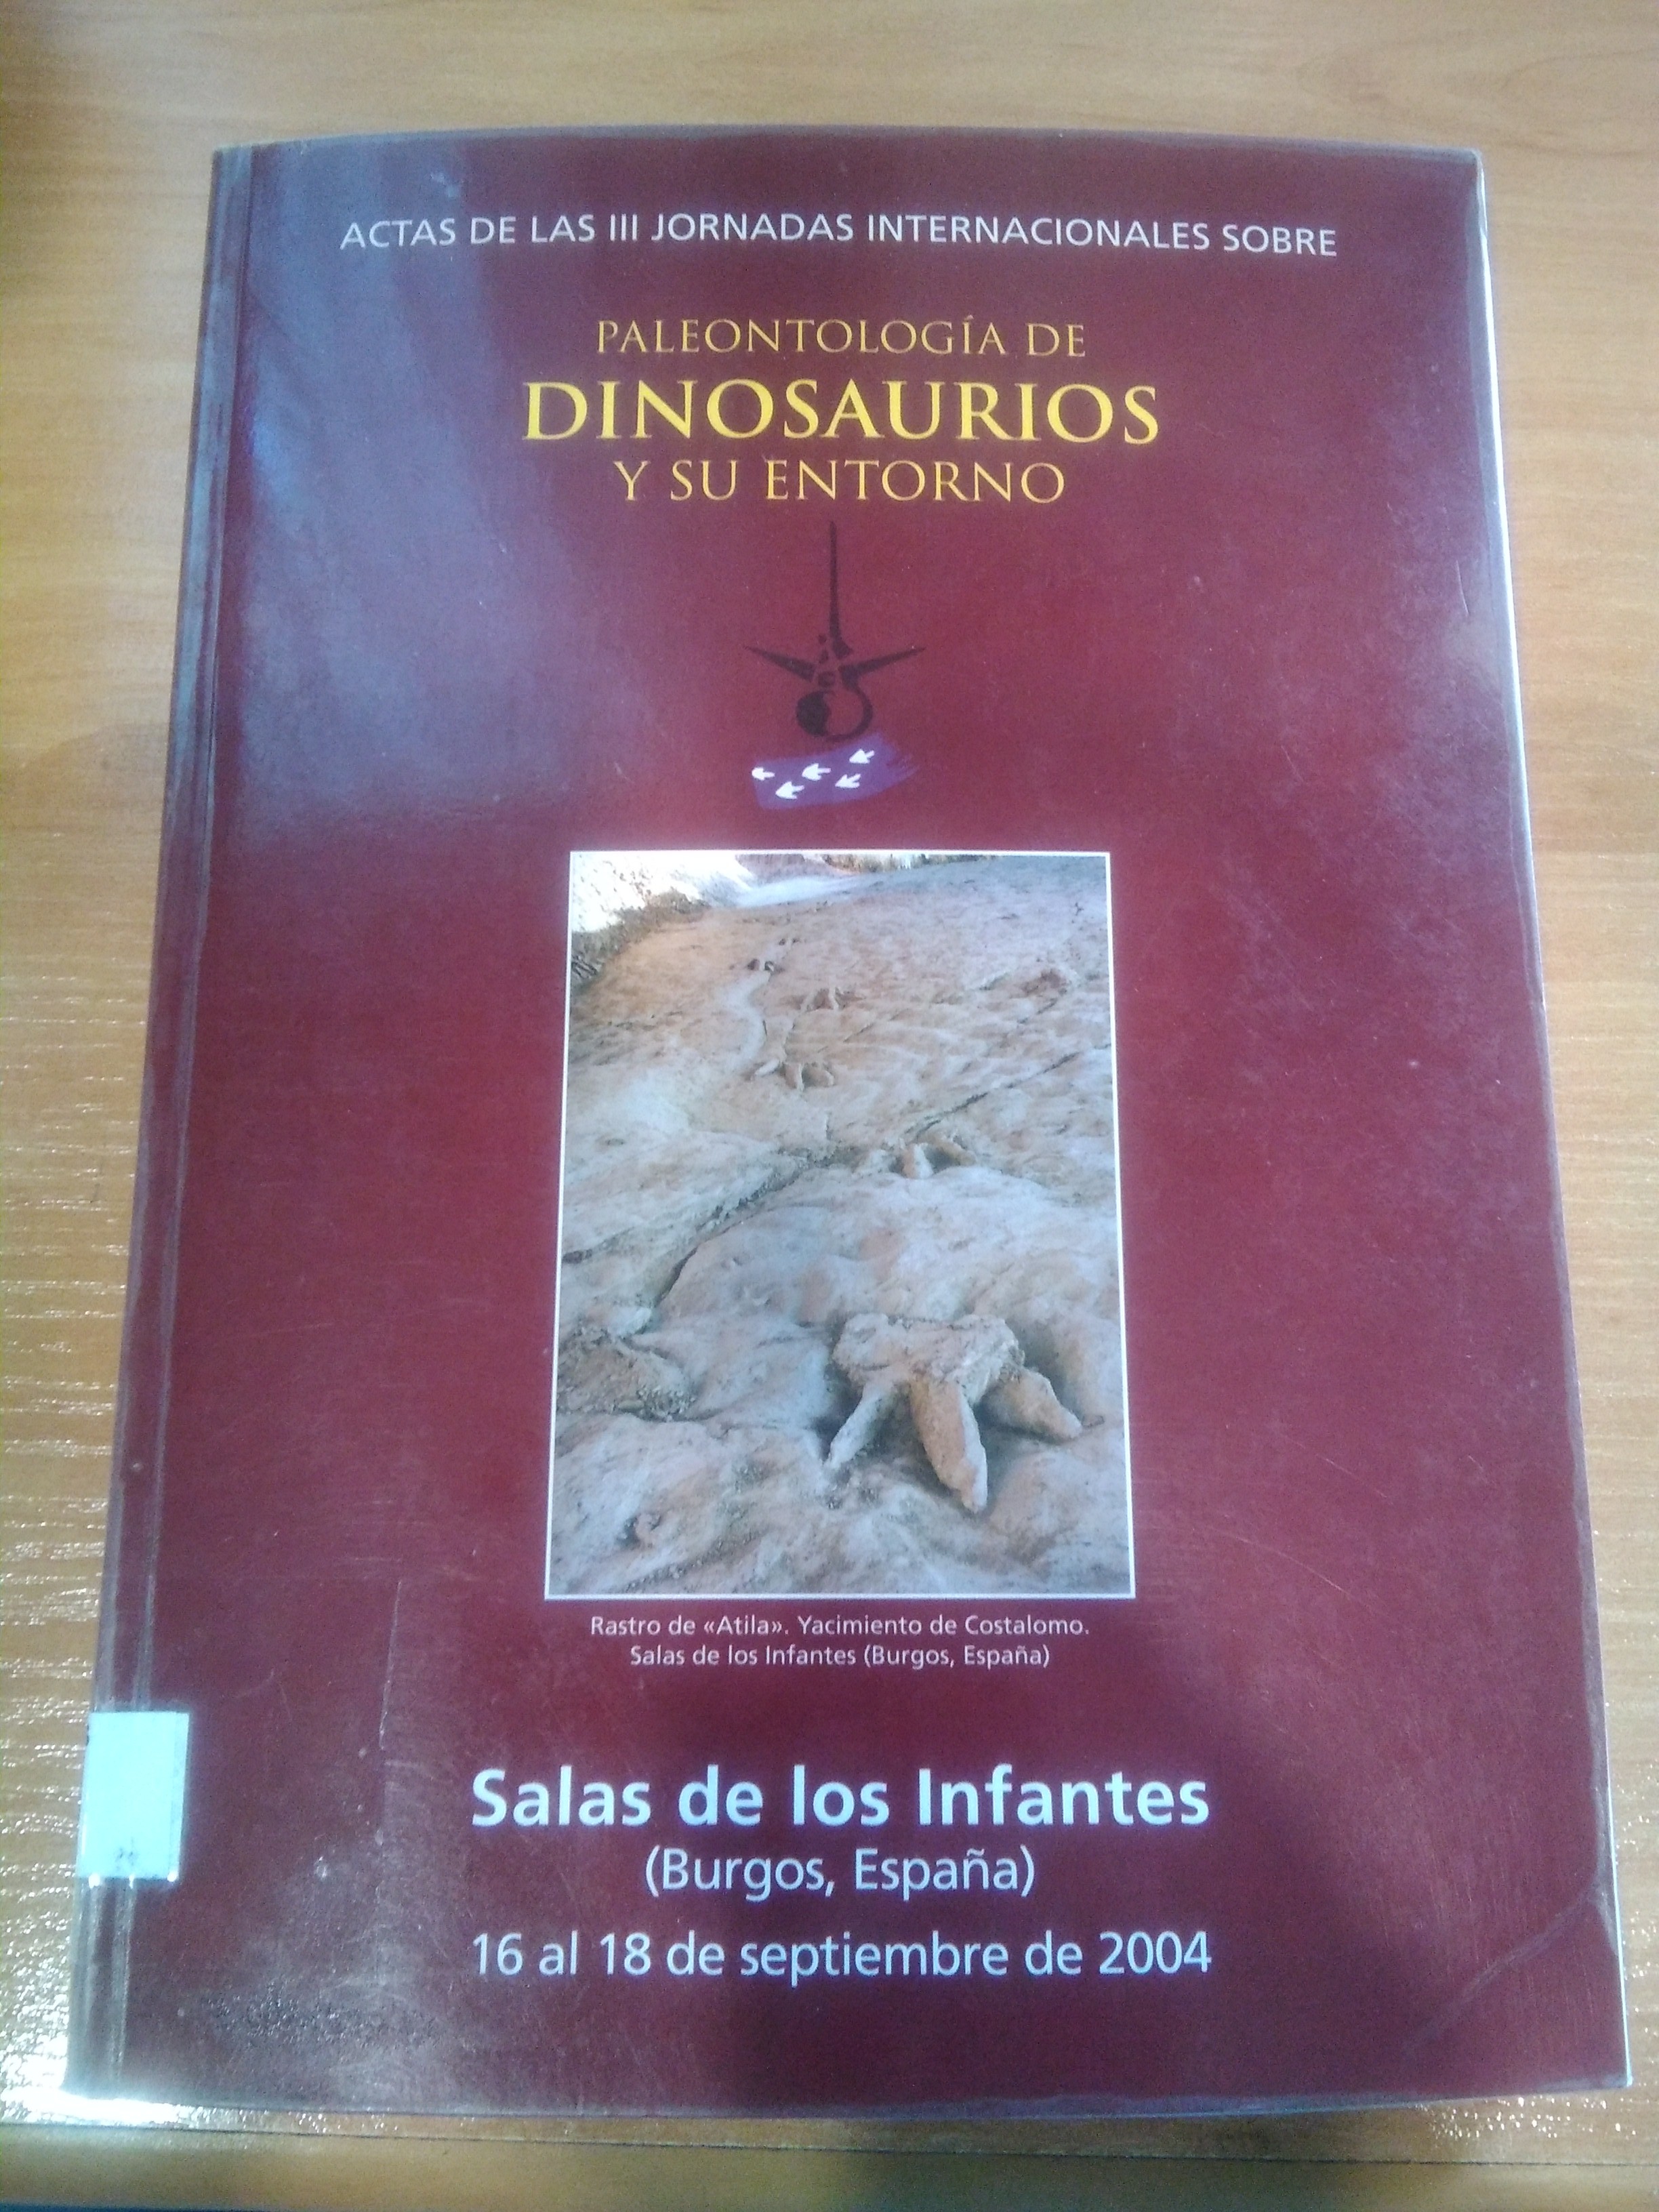 Imagen de portada del libro Actas de las III Jornadas Internacionales sobre Paleontología de Dinosaurios y su Entorno